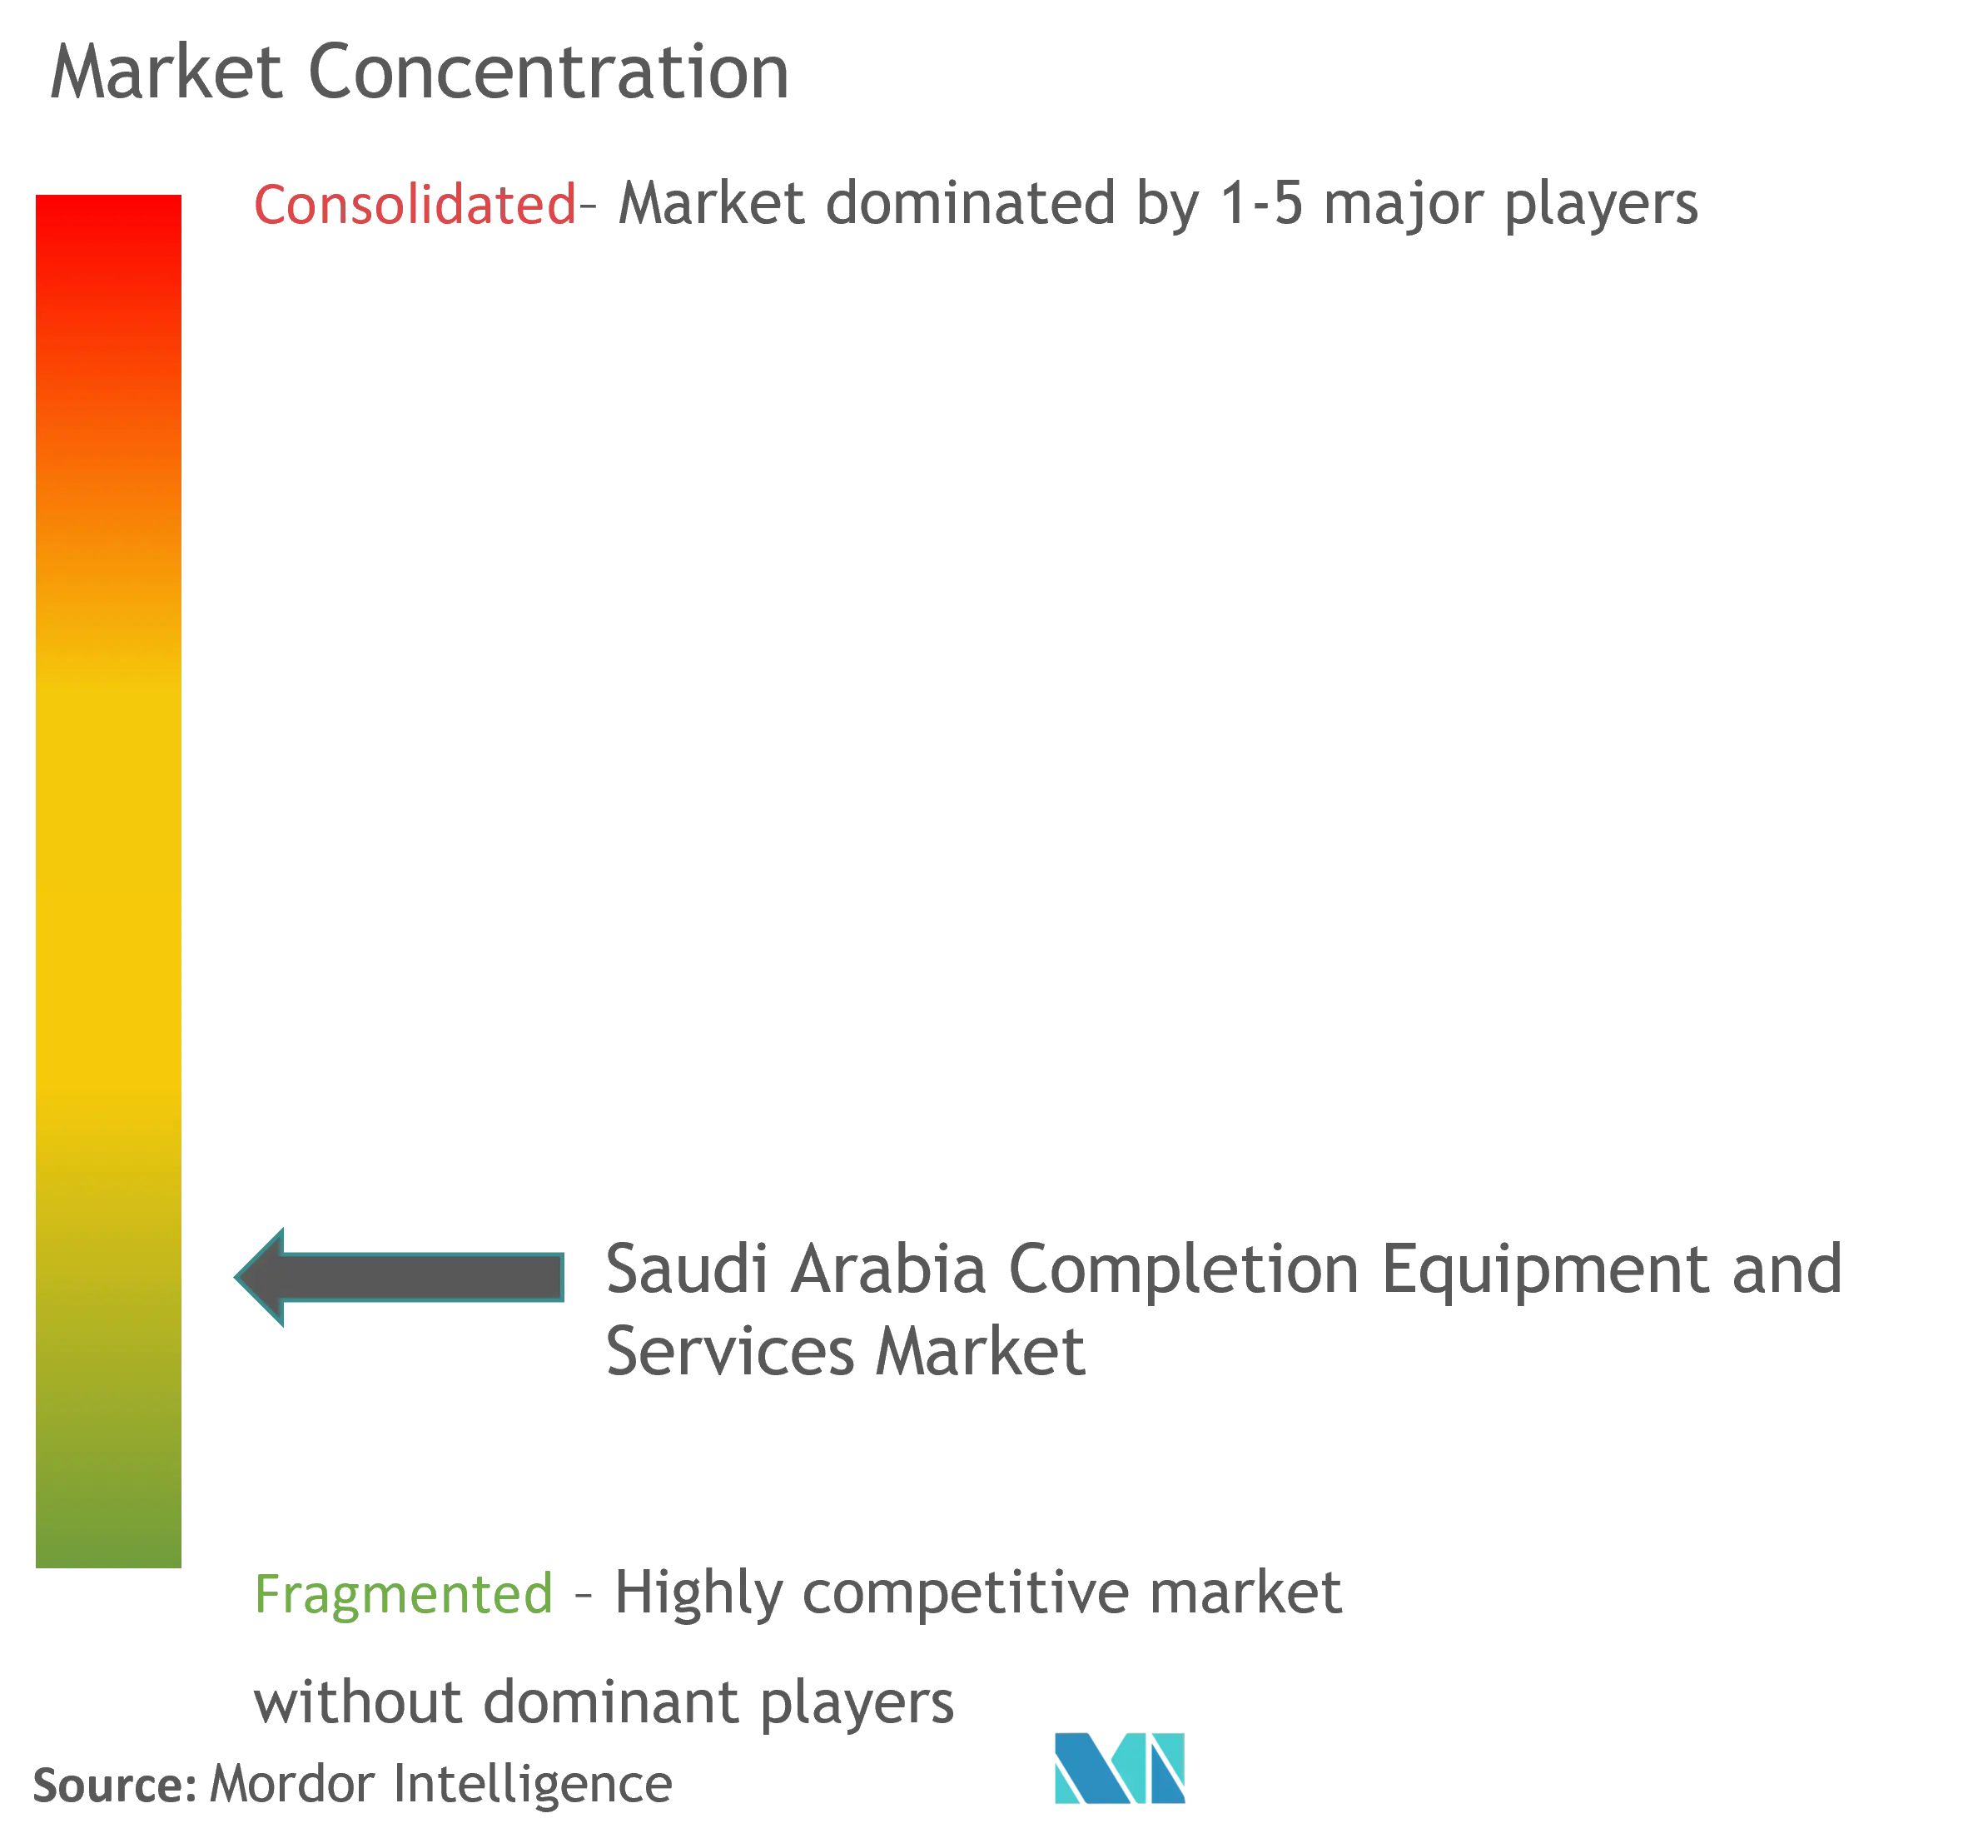 Marktkonzentration für Fertigstellungsausrüstung und -dienstleistungen in Saudi-Arabien